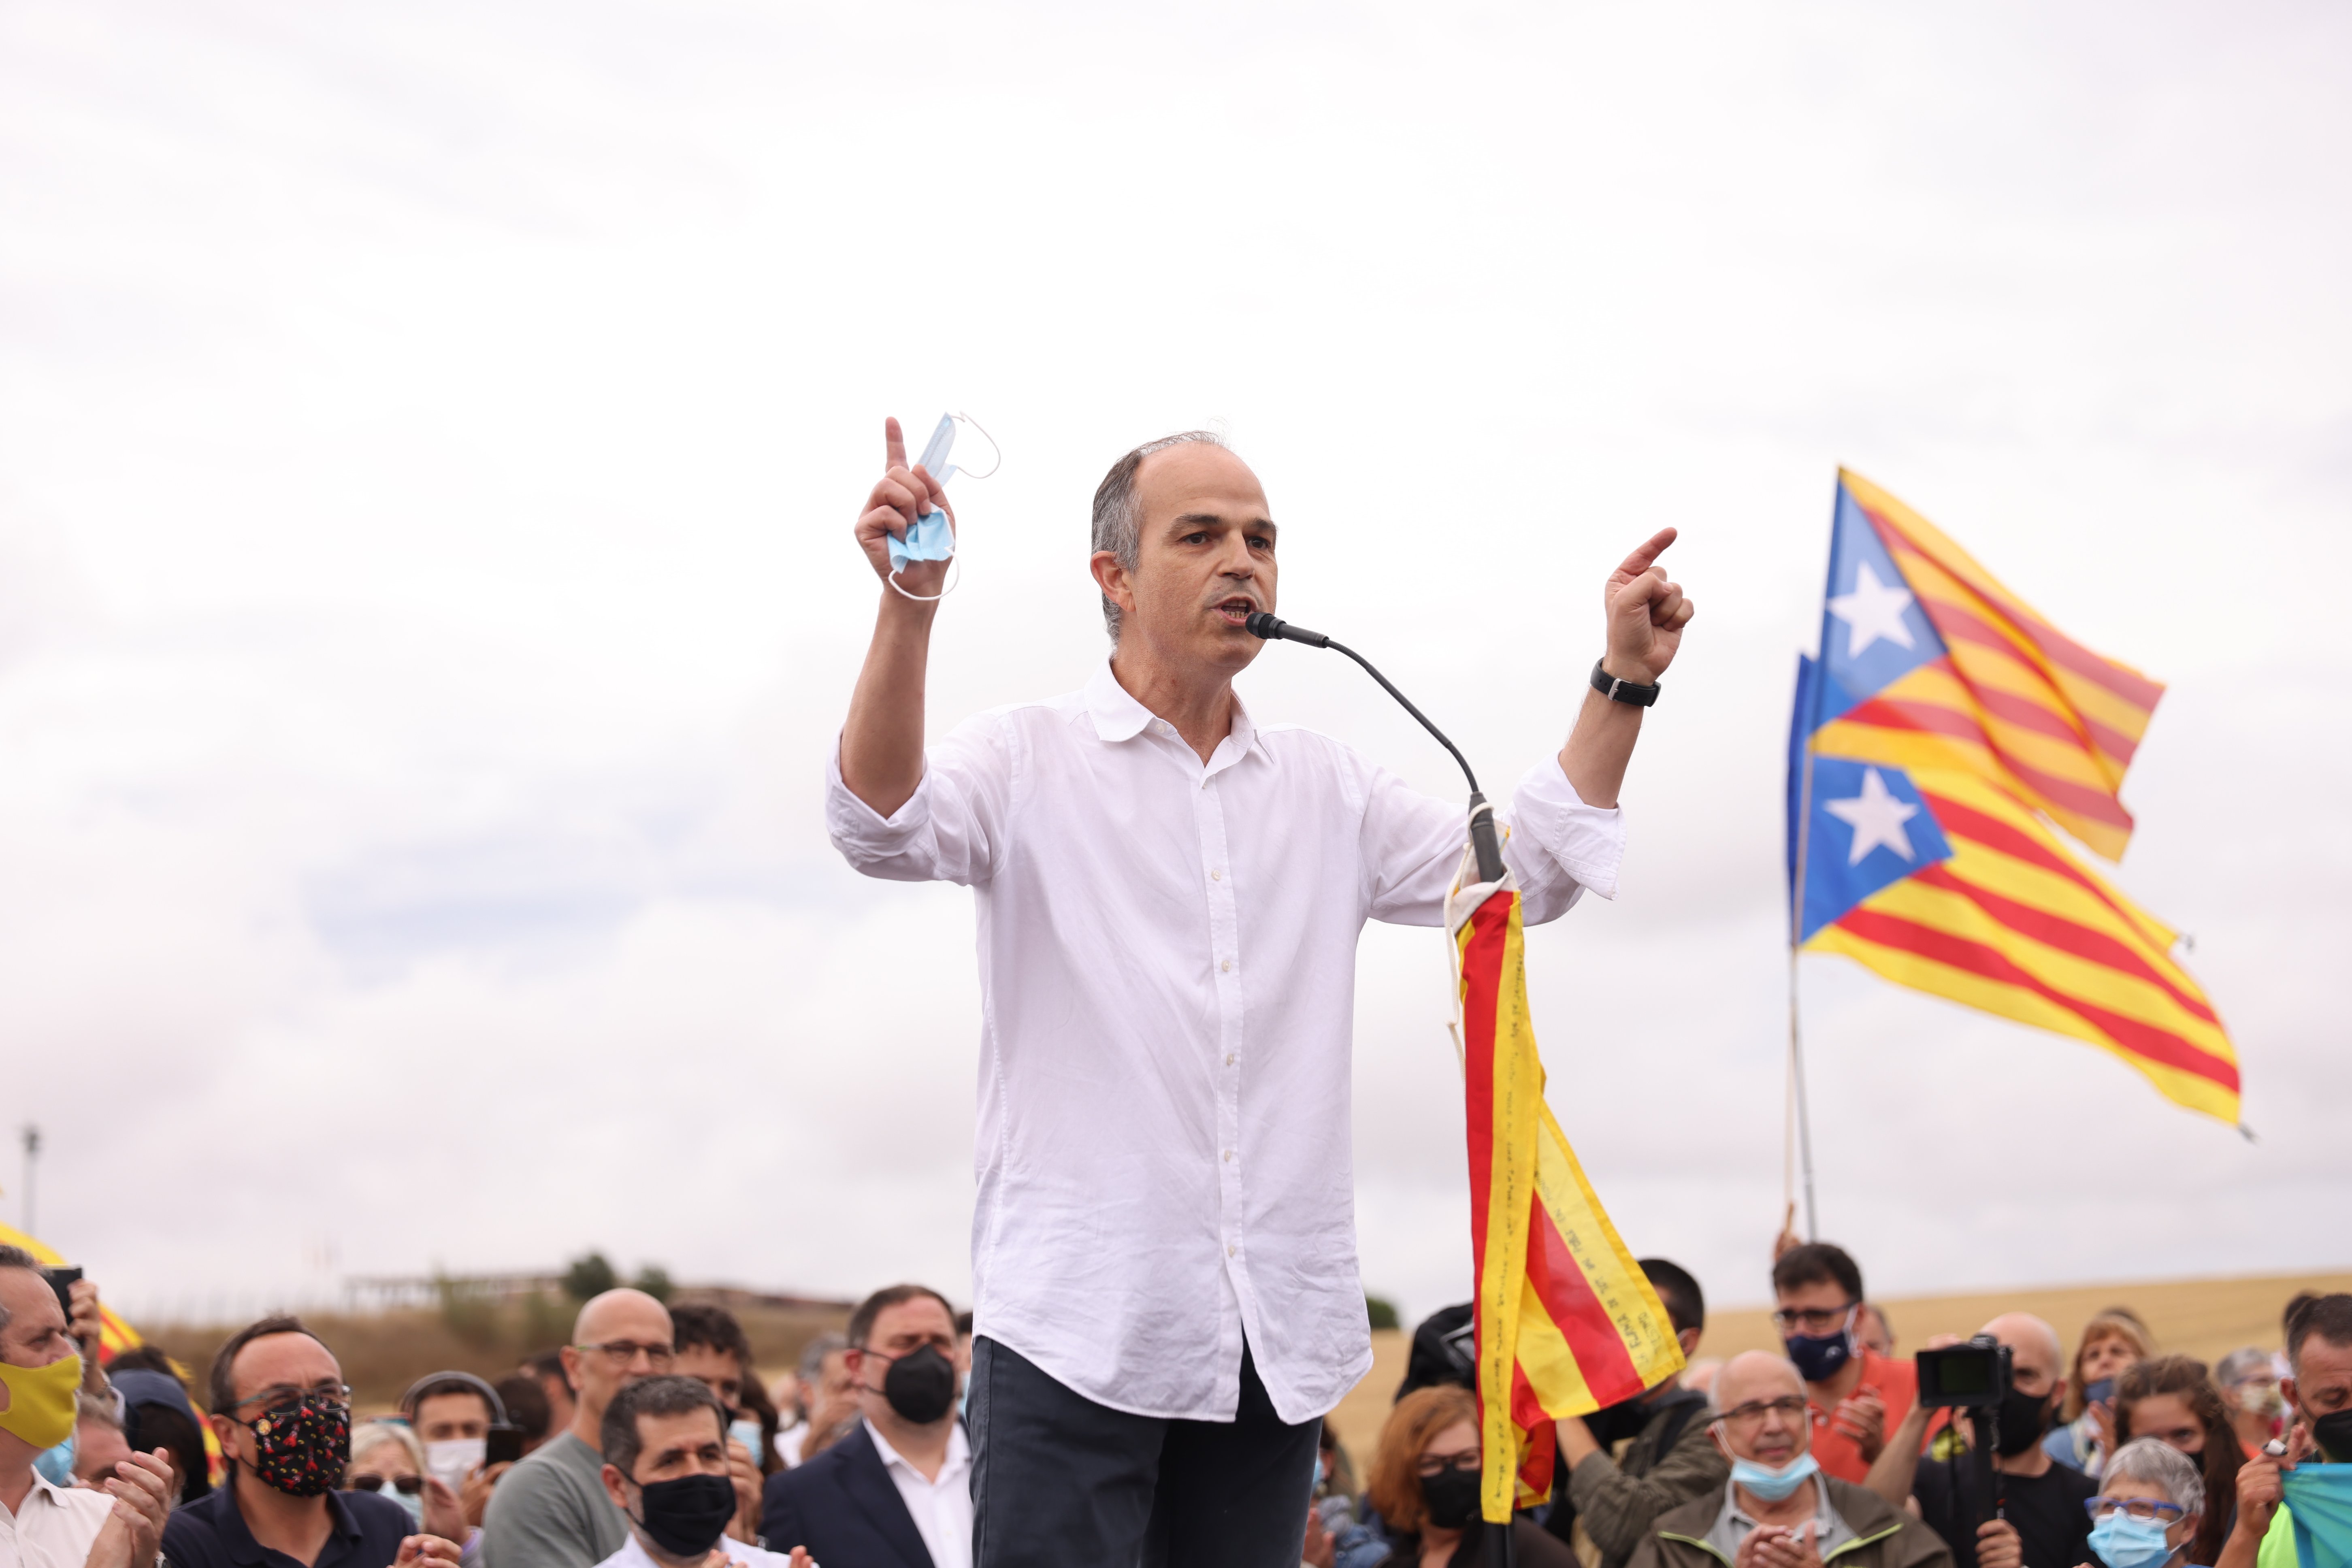 Jordi Turull, libre y emocionado al volver a su rincón favorito de Catalunya